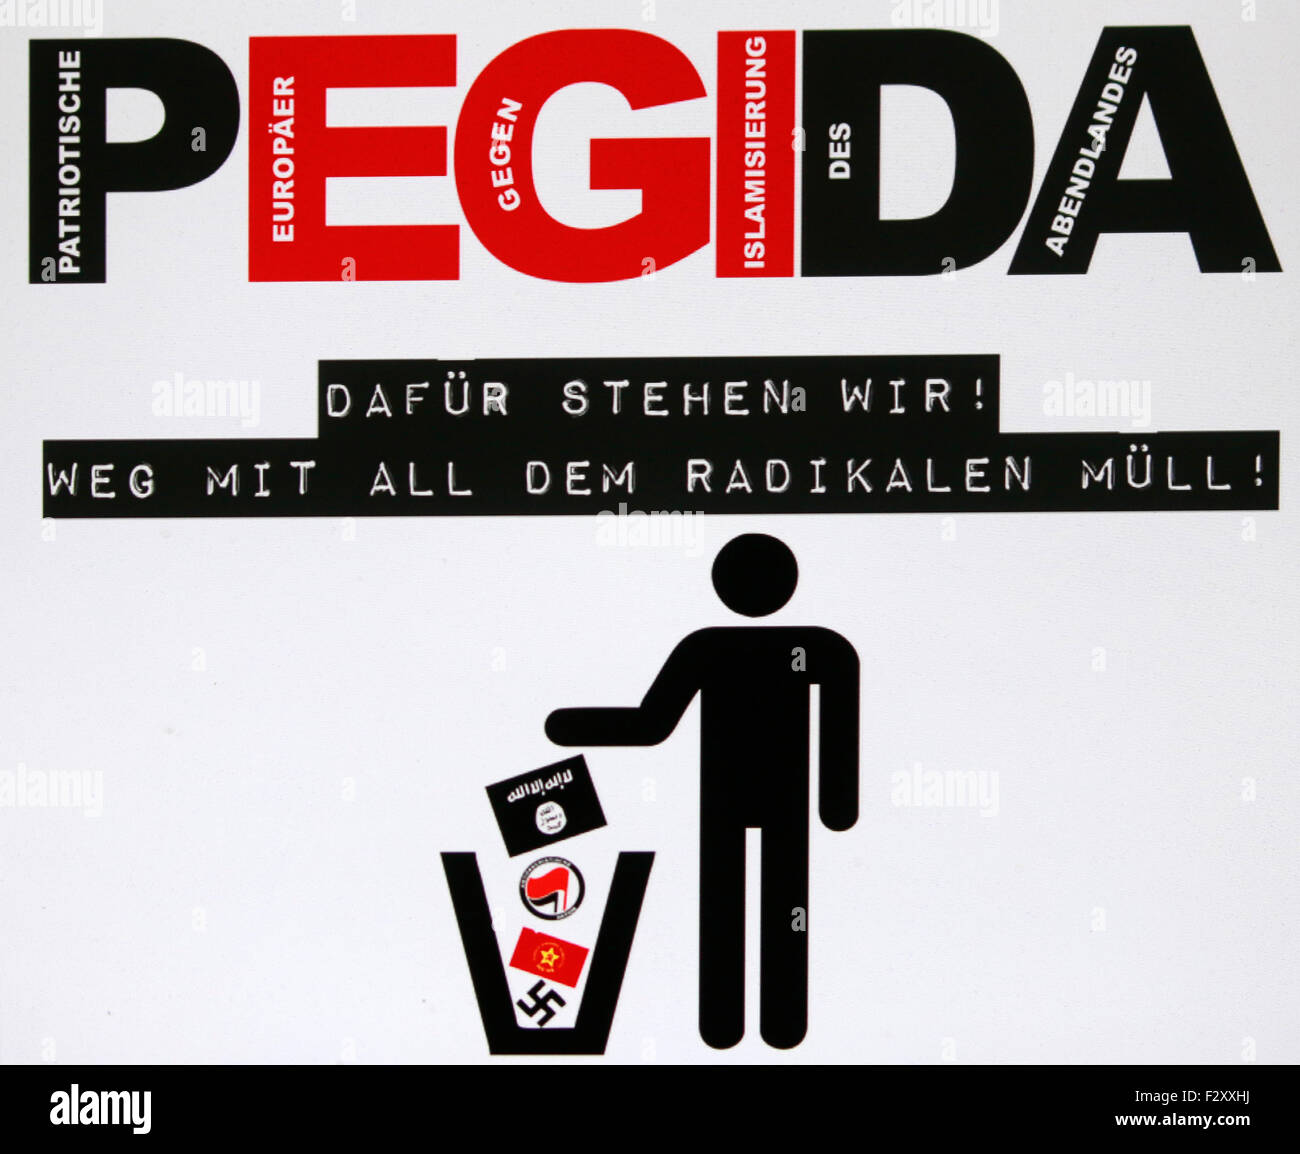 Das Logo der Islamkritischen "Pegida"-Bewegung, Berlin. Stockfoto